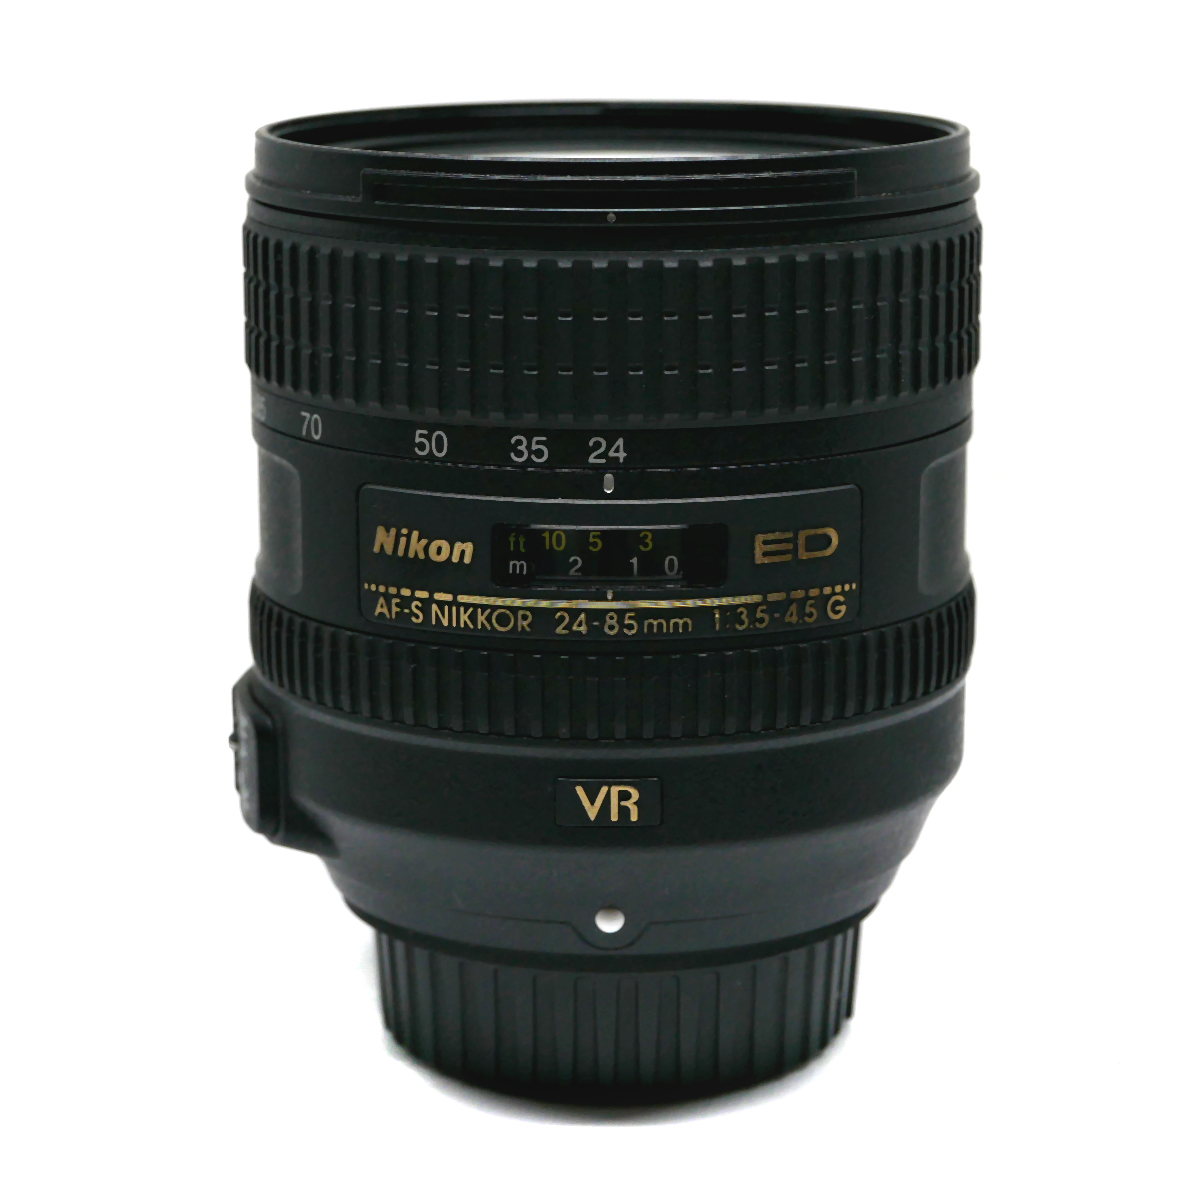 Nikon AF-S Nikkor 24-85mm f/3.5-4.5G ED VR (käytetty) - Kameraliike.fi